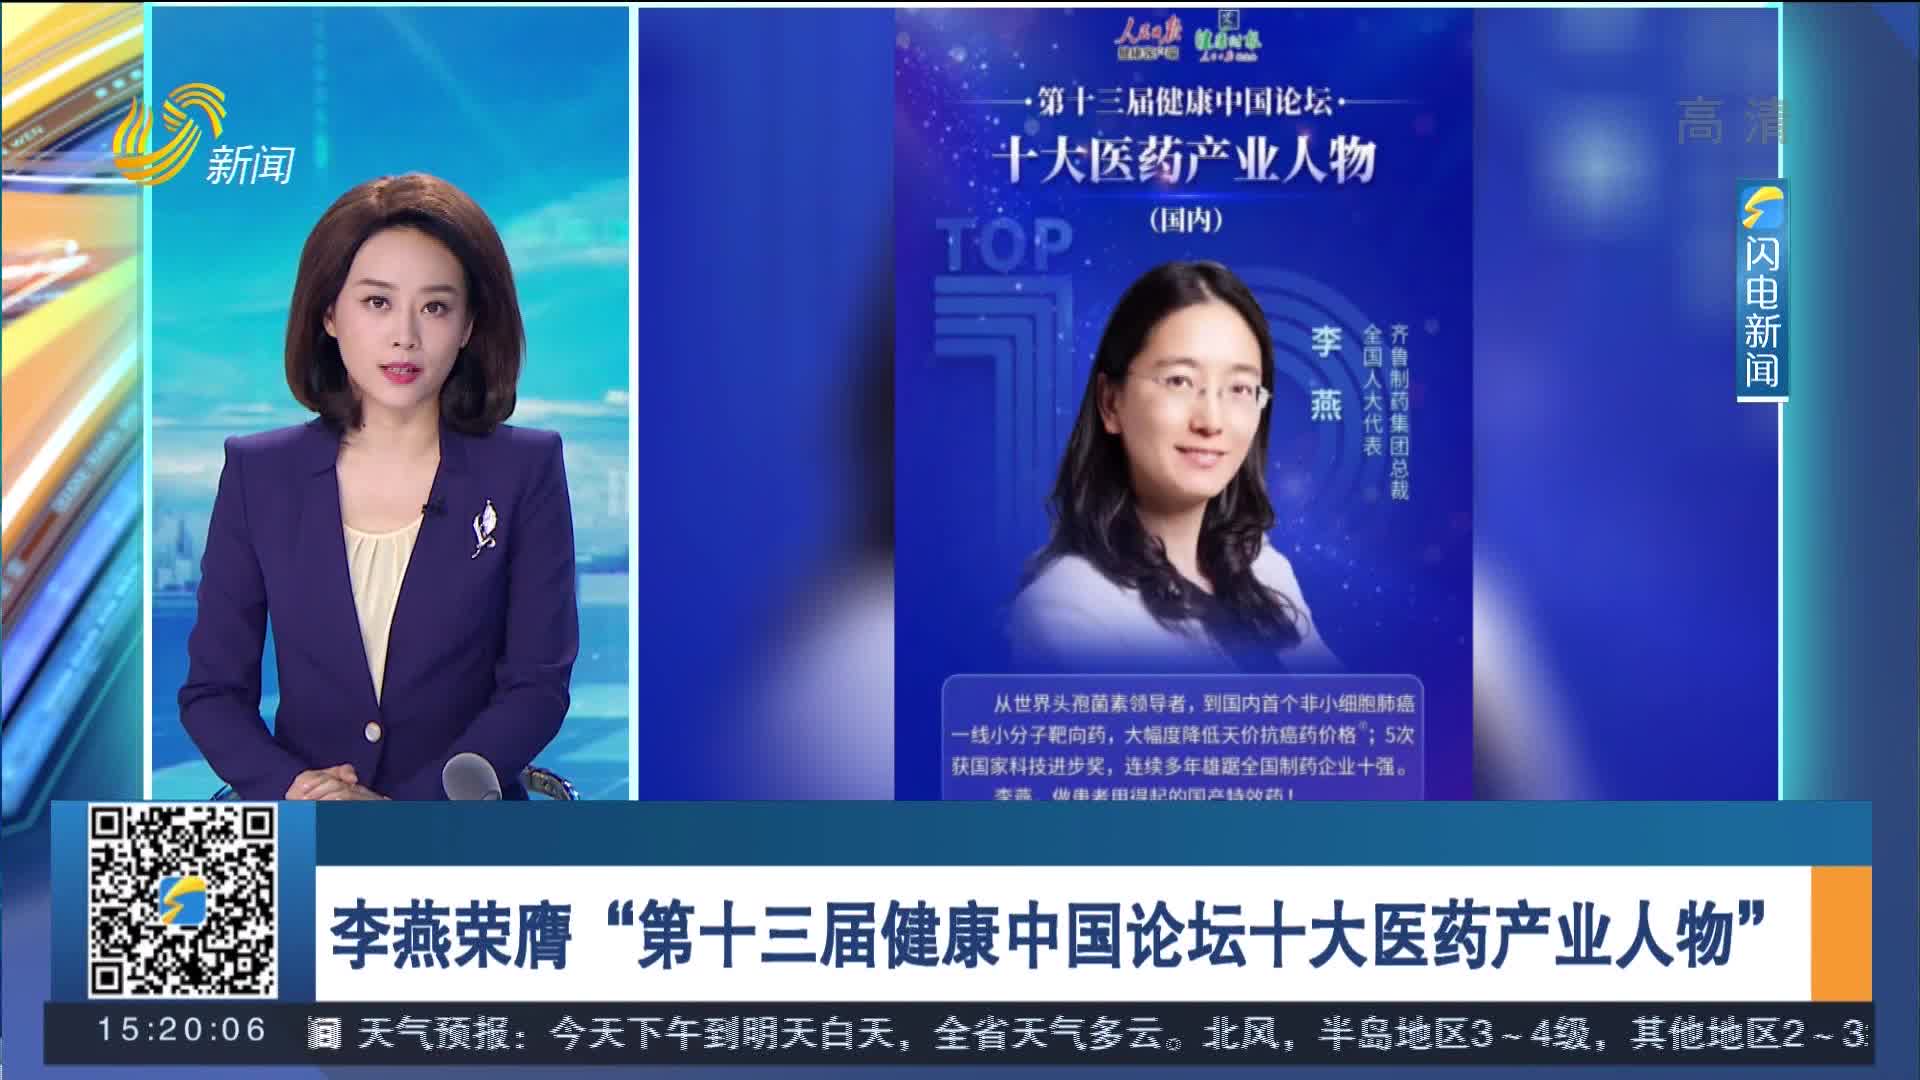 李燕荣膺“第十三届健康中国论坛十大医药产业人物”